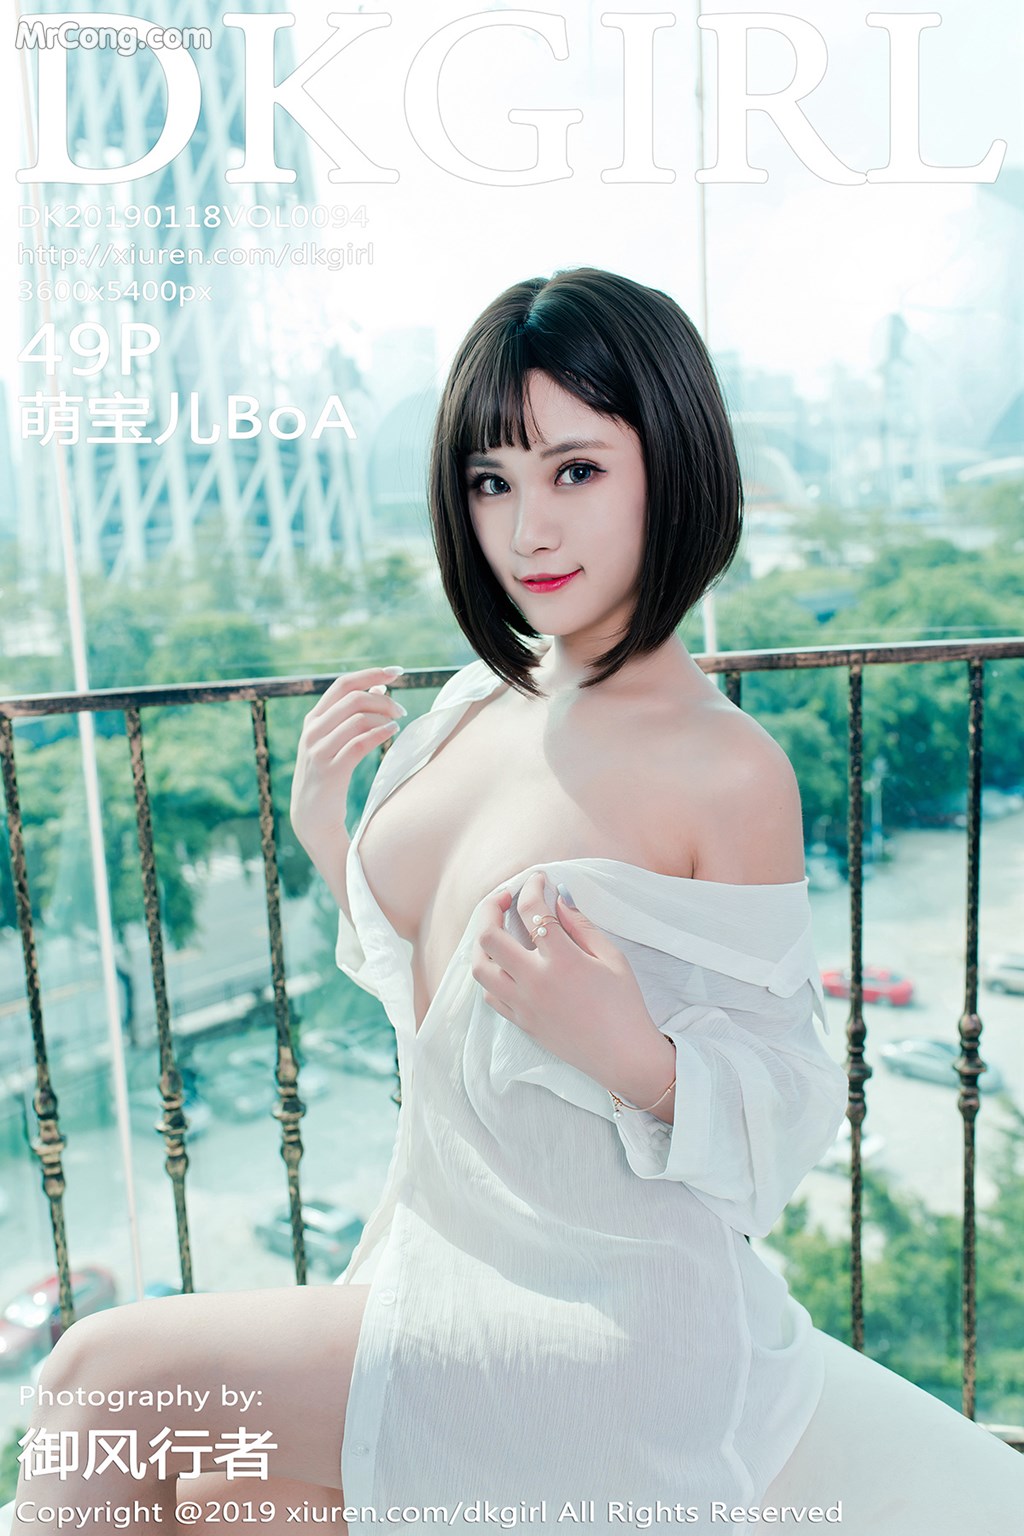 DKGirl Vol.094: Model Meng Bao Er (萌 宝儿 BoA) (48 photos)